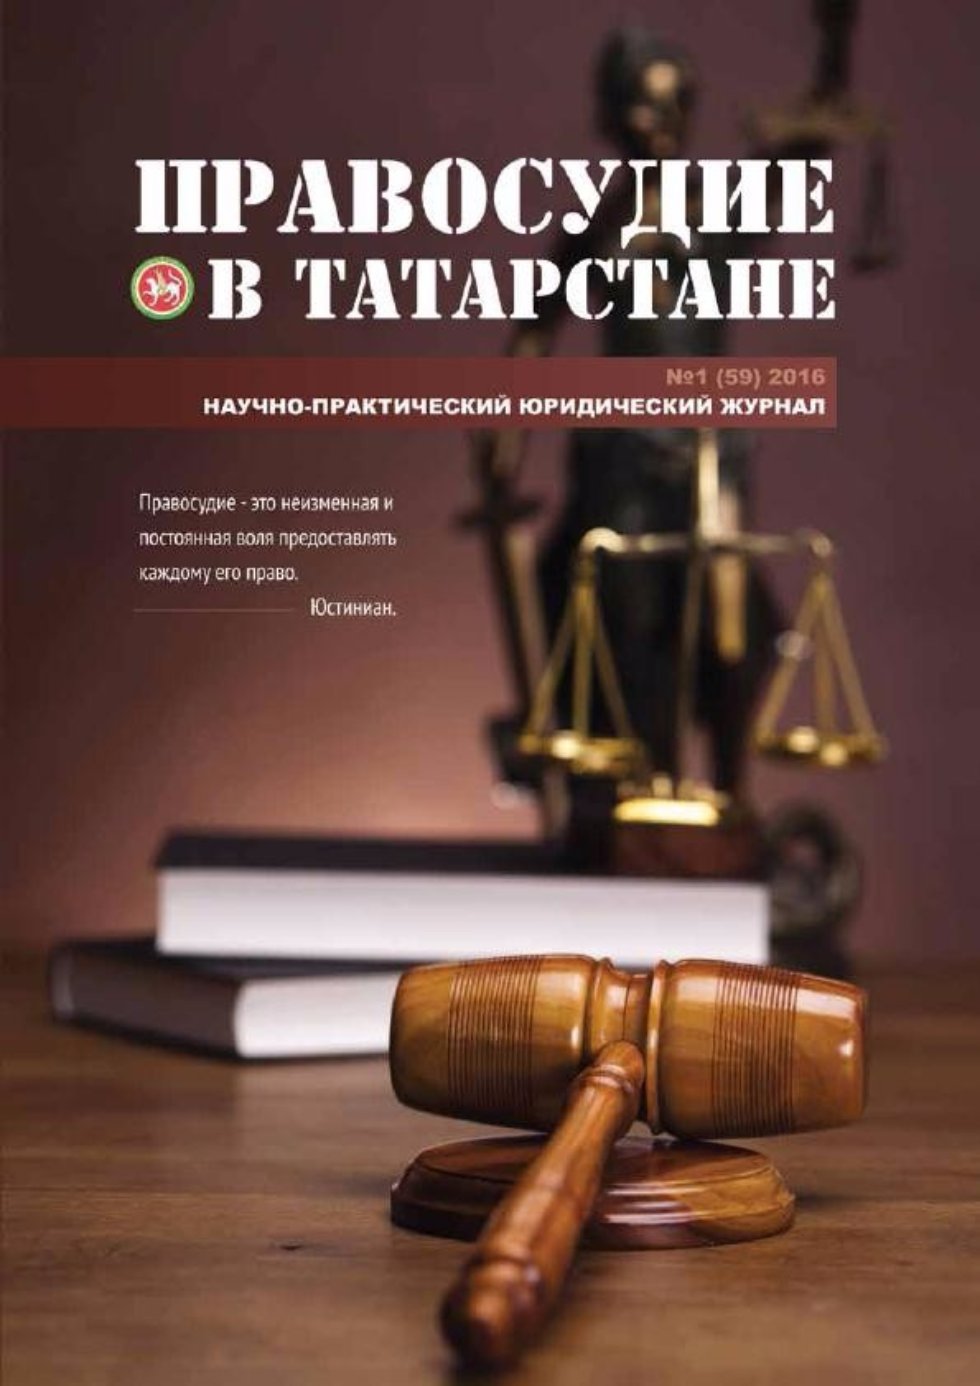 Всероссийские судебные дебаты 2016 глазами судьи - участника модельного судебного процесса